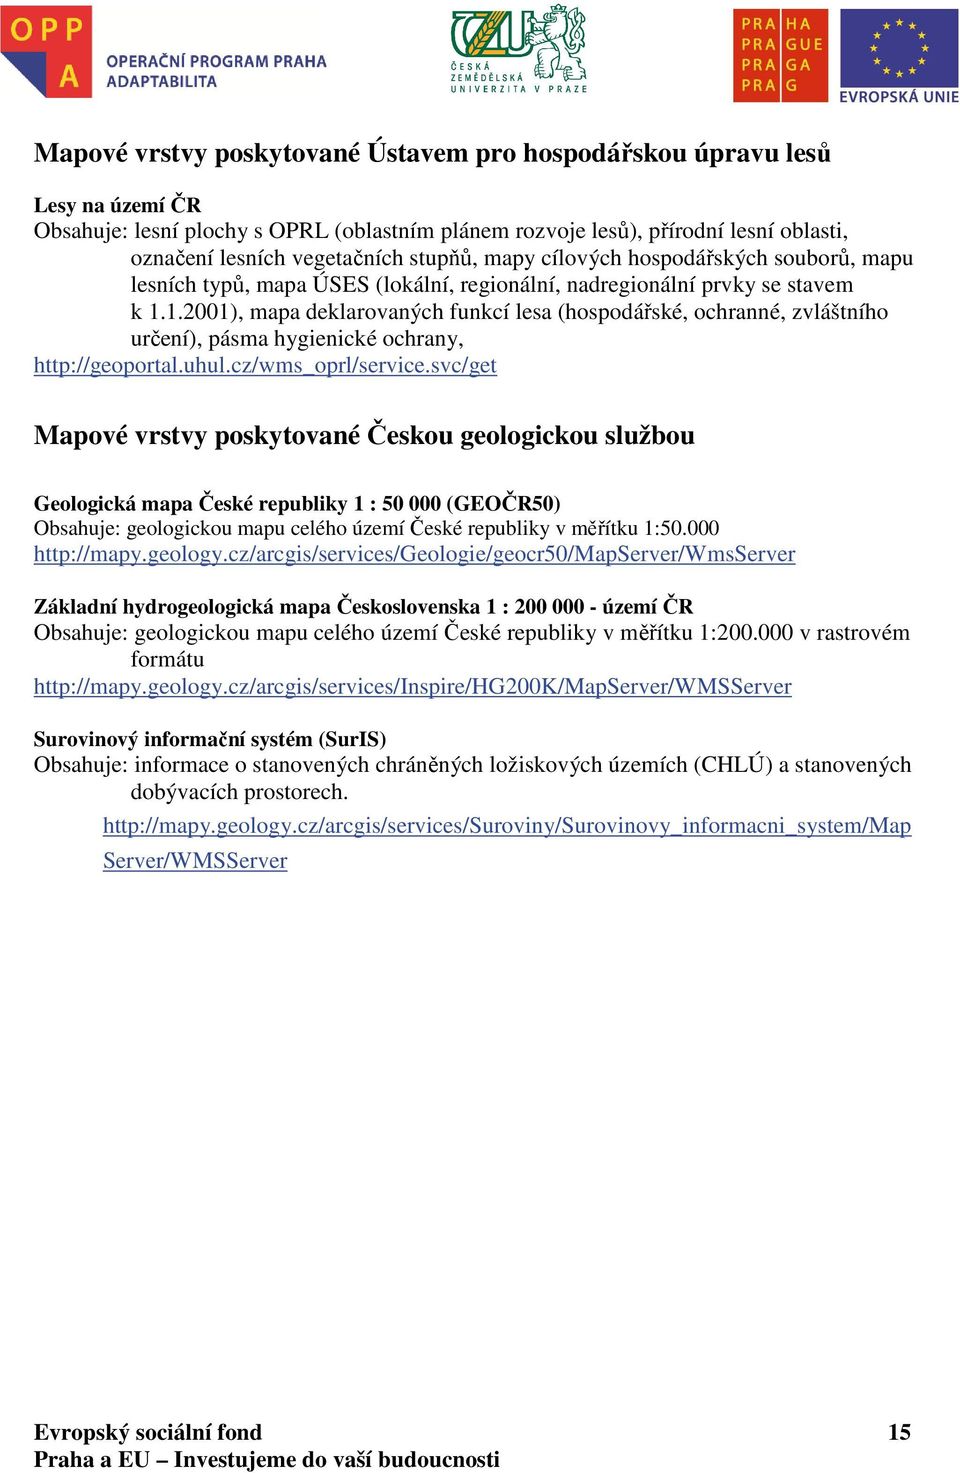 1.2001), mapa deklarovaných funkcí lesa (hospodářské, ochranné, zvláštního určení), pásma hygienické ochrany, http://geoportal.uhul.cz/wms_oprl/service.